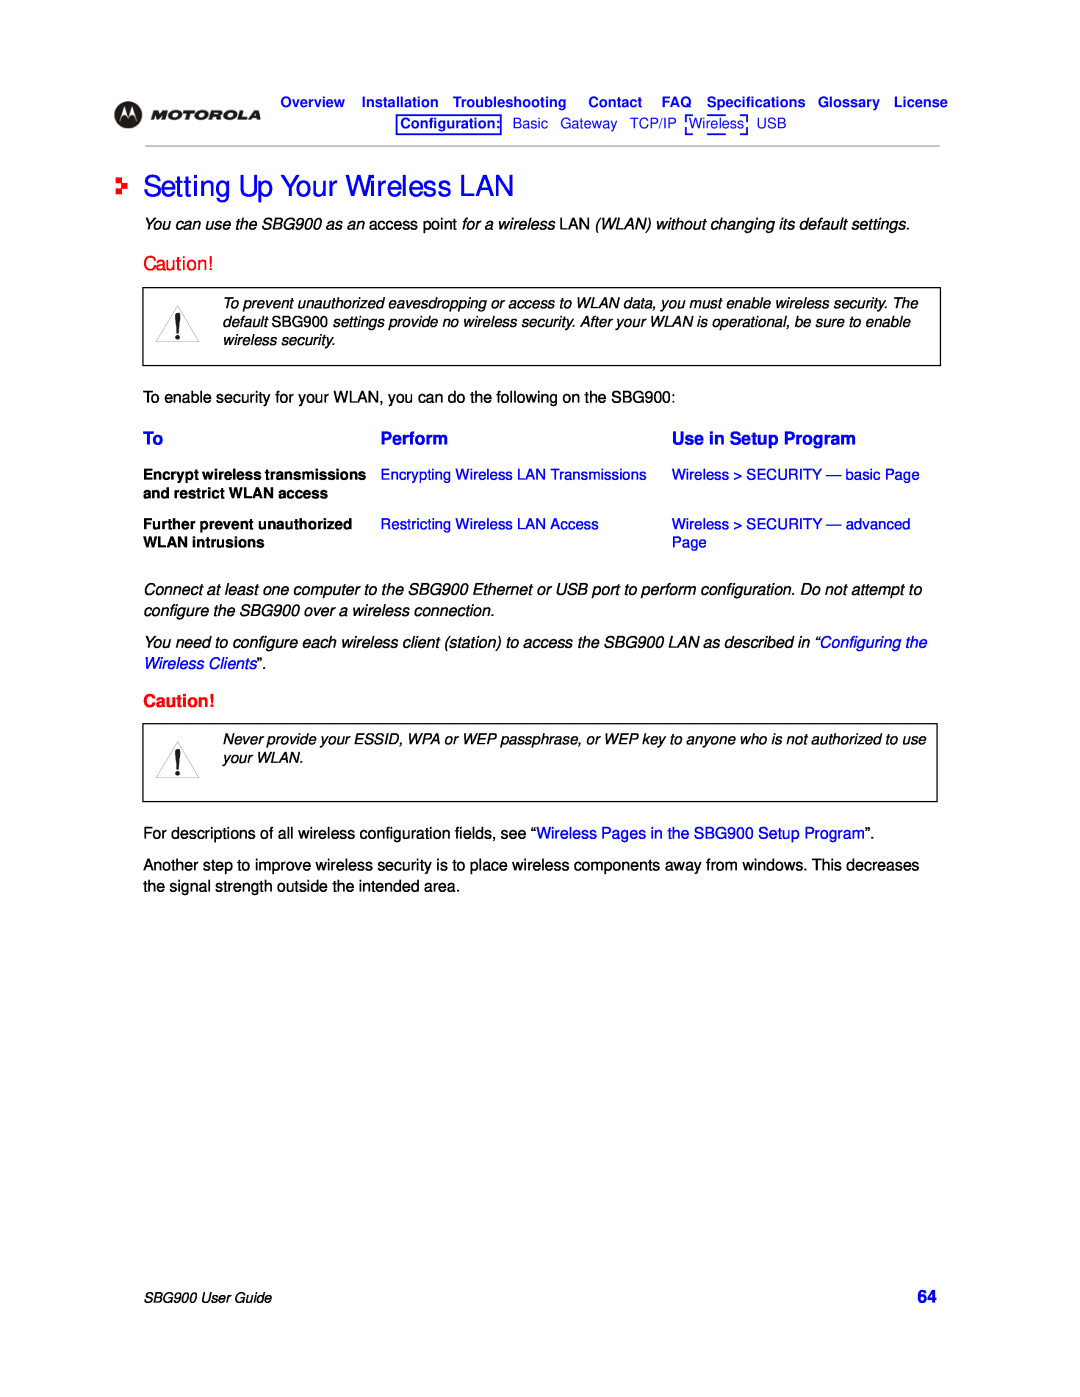 Motorola SBG900 manual Setting Up Your Wireless LAN, Perform, Use in Setup Program 